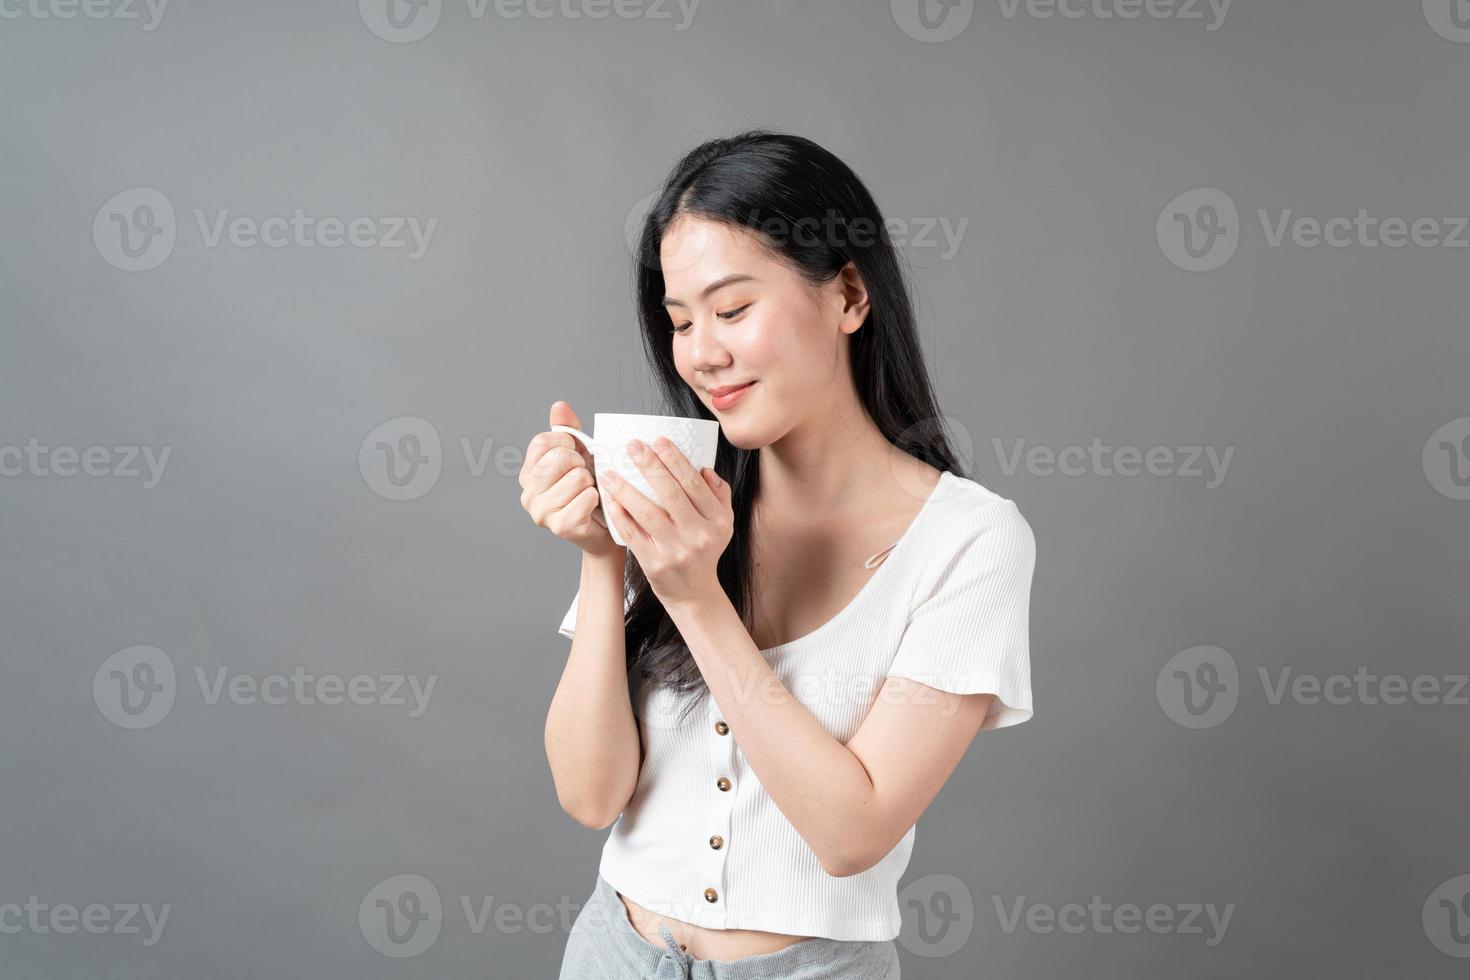 giovane donna asiatica con la faccia felice e la mano che tiene la tazza di caffè coffee foto